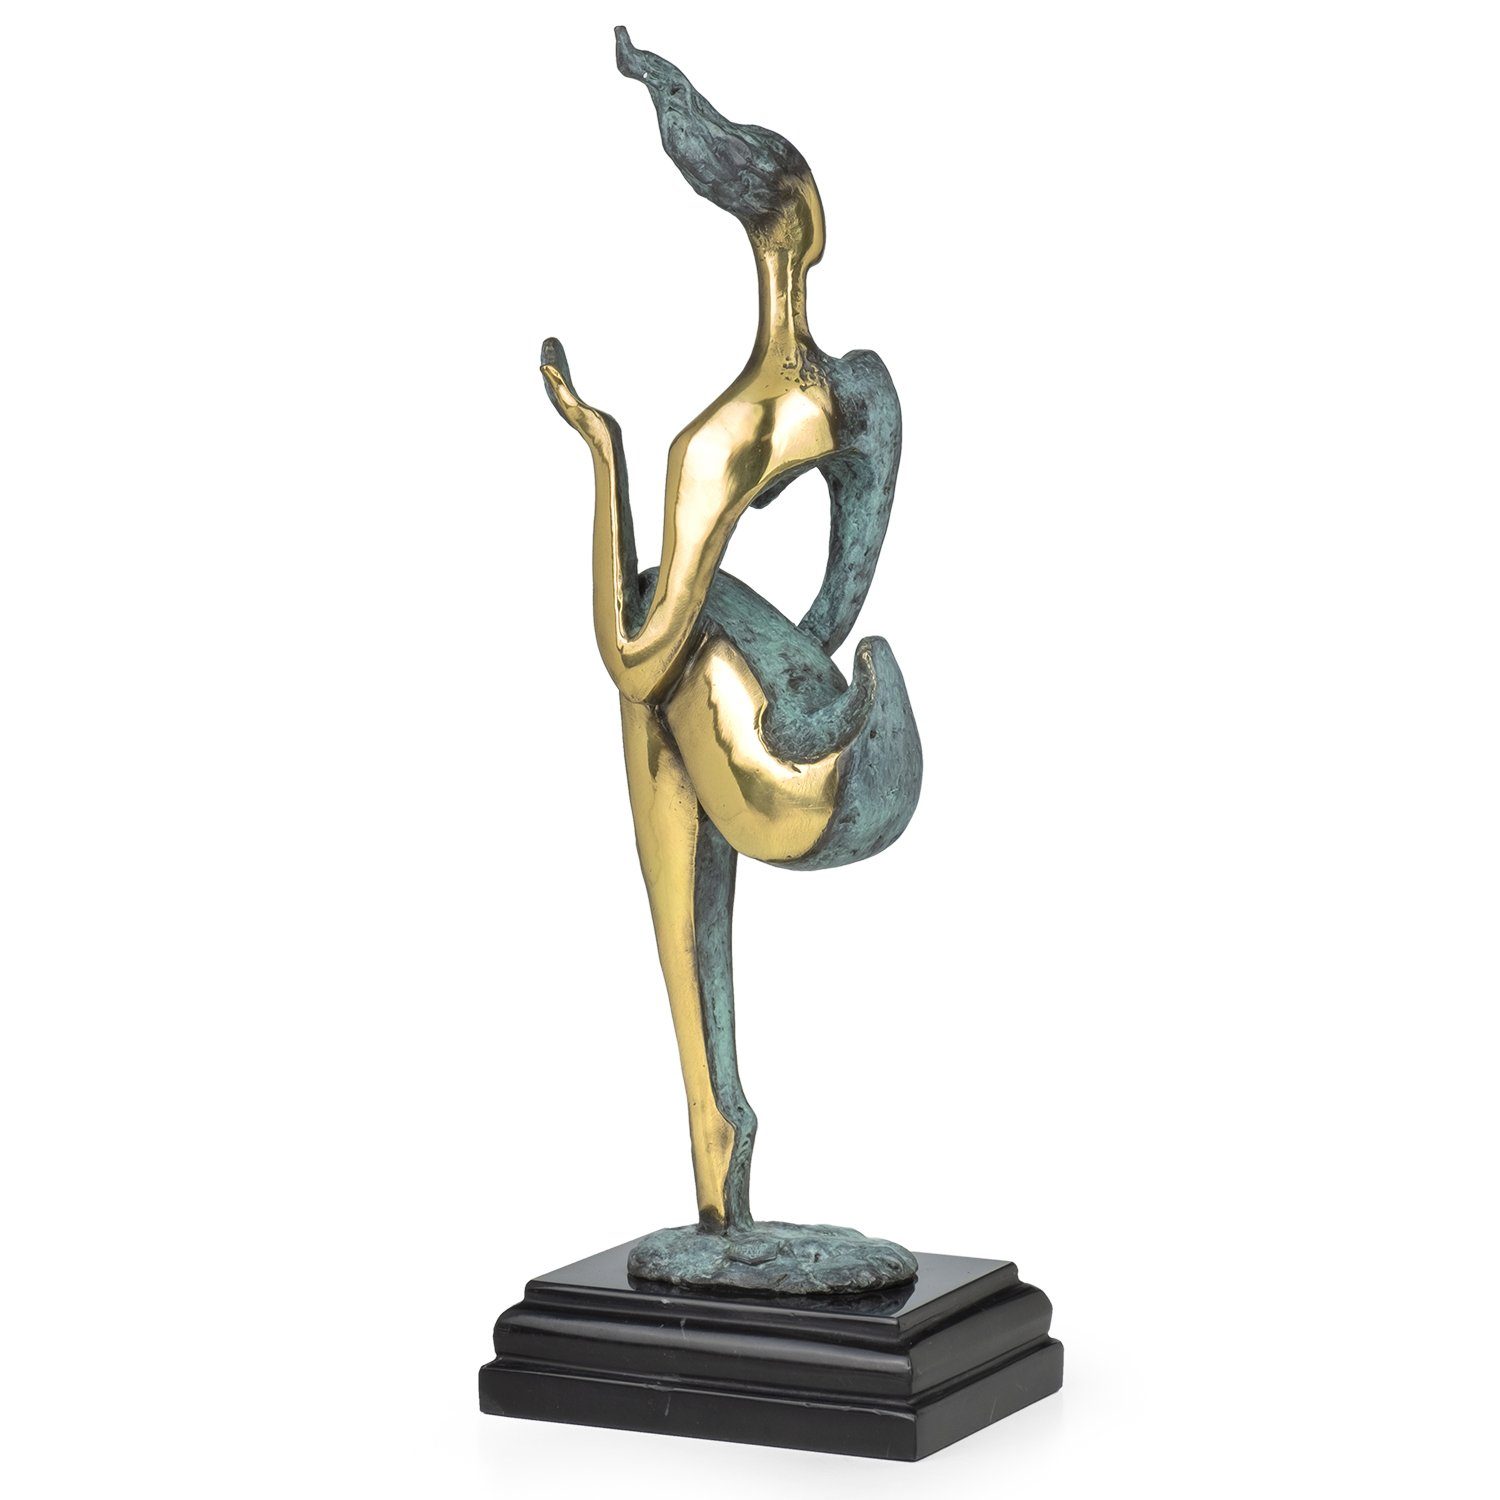 Schreibtisch Vitrine Skulptur Deko Bronzefigur für Weiblicher Bronzefigur Moritz Figuren abstrakt, Regal Dekofigur Akt